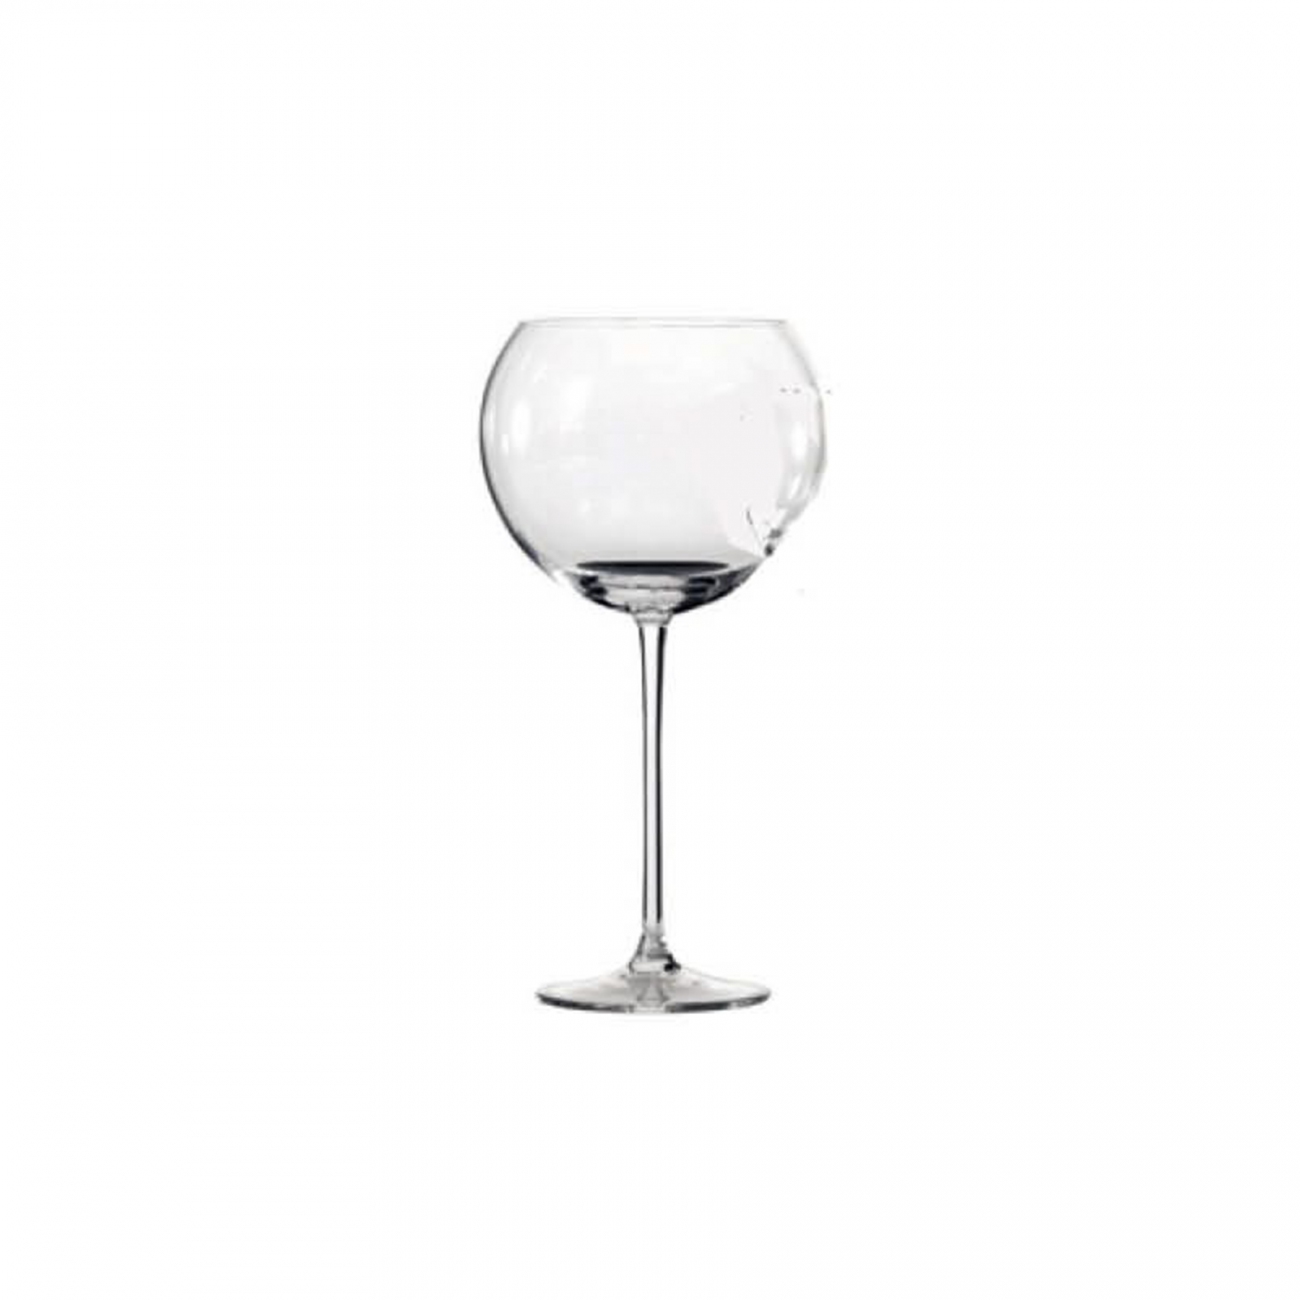 Driade La Sfera Wine glass